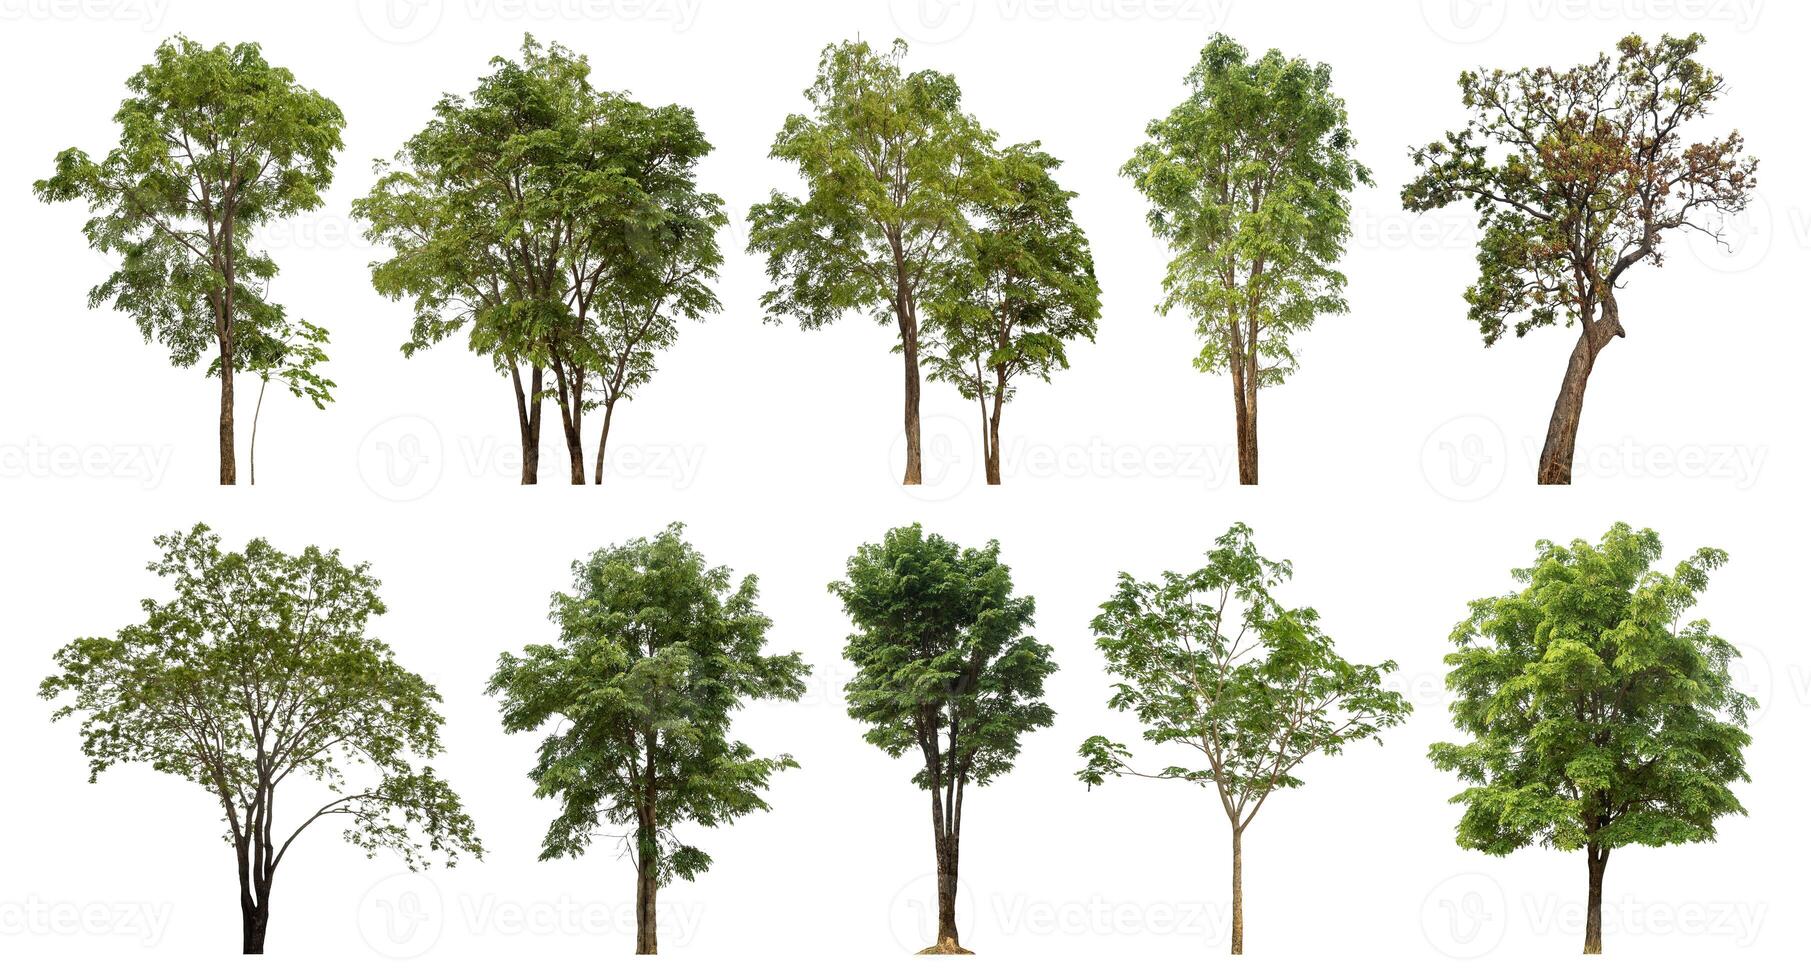 samling träd skära ut från original- bakgrund och byta ut med vit bakgrund för lätt till urval. foto